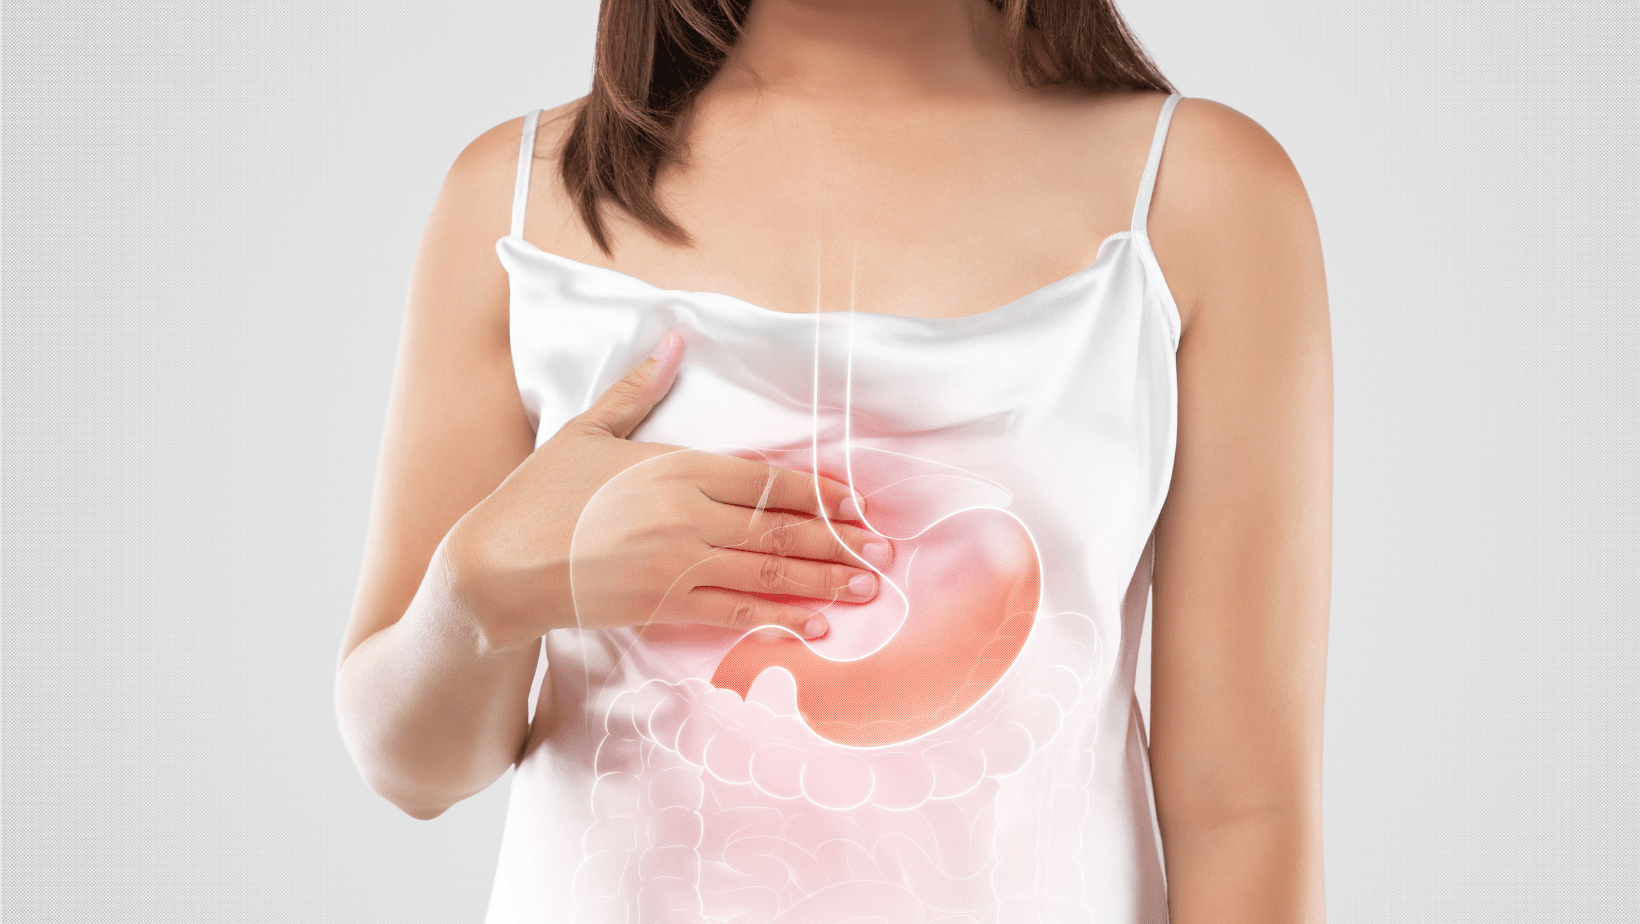 Malattia da reflusso gastro esofageo: cos’è e come curarla a tavola